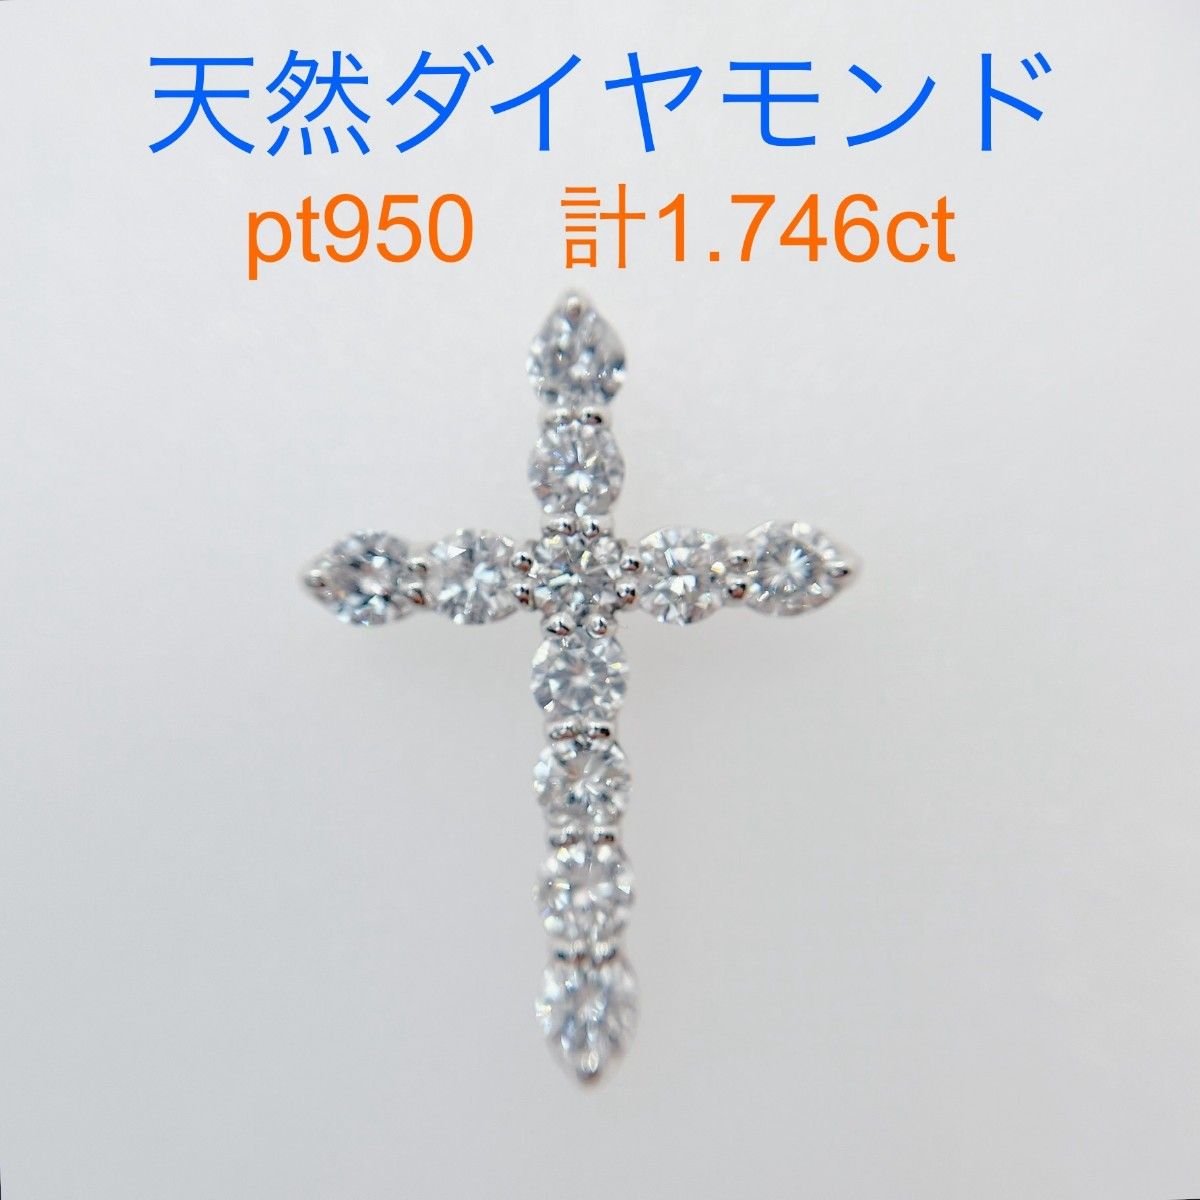 Tキラキラ ダイヤモンド計1.746ct  PT950ペンダントトップクロス